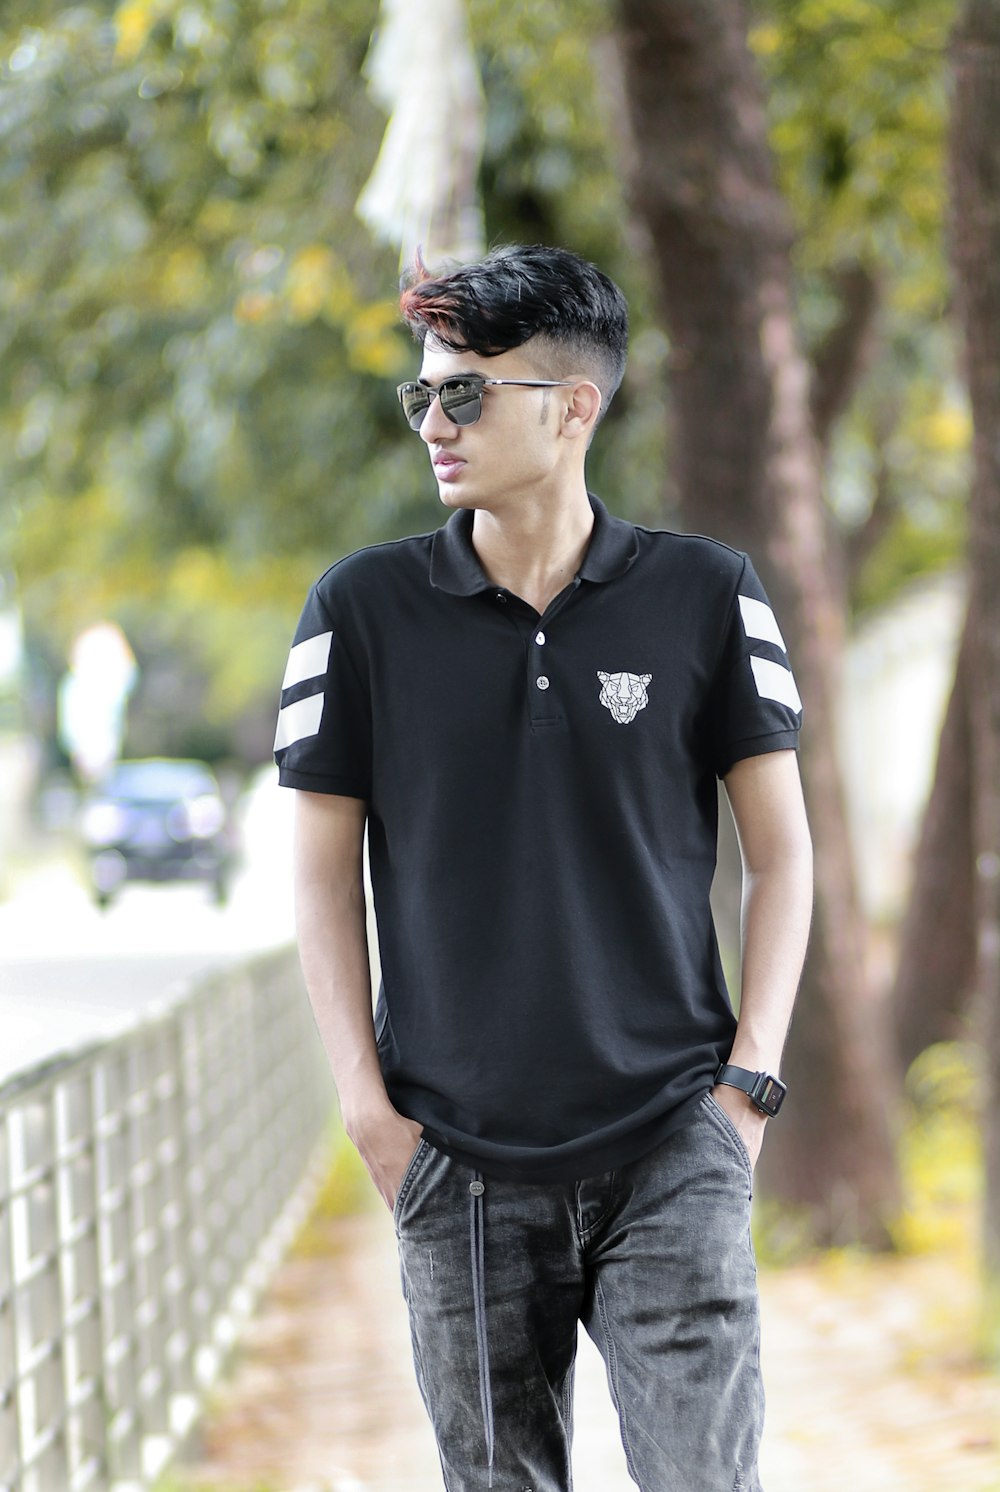 a man standing on a sidewalk wearing a black shirt